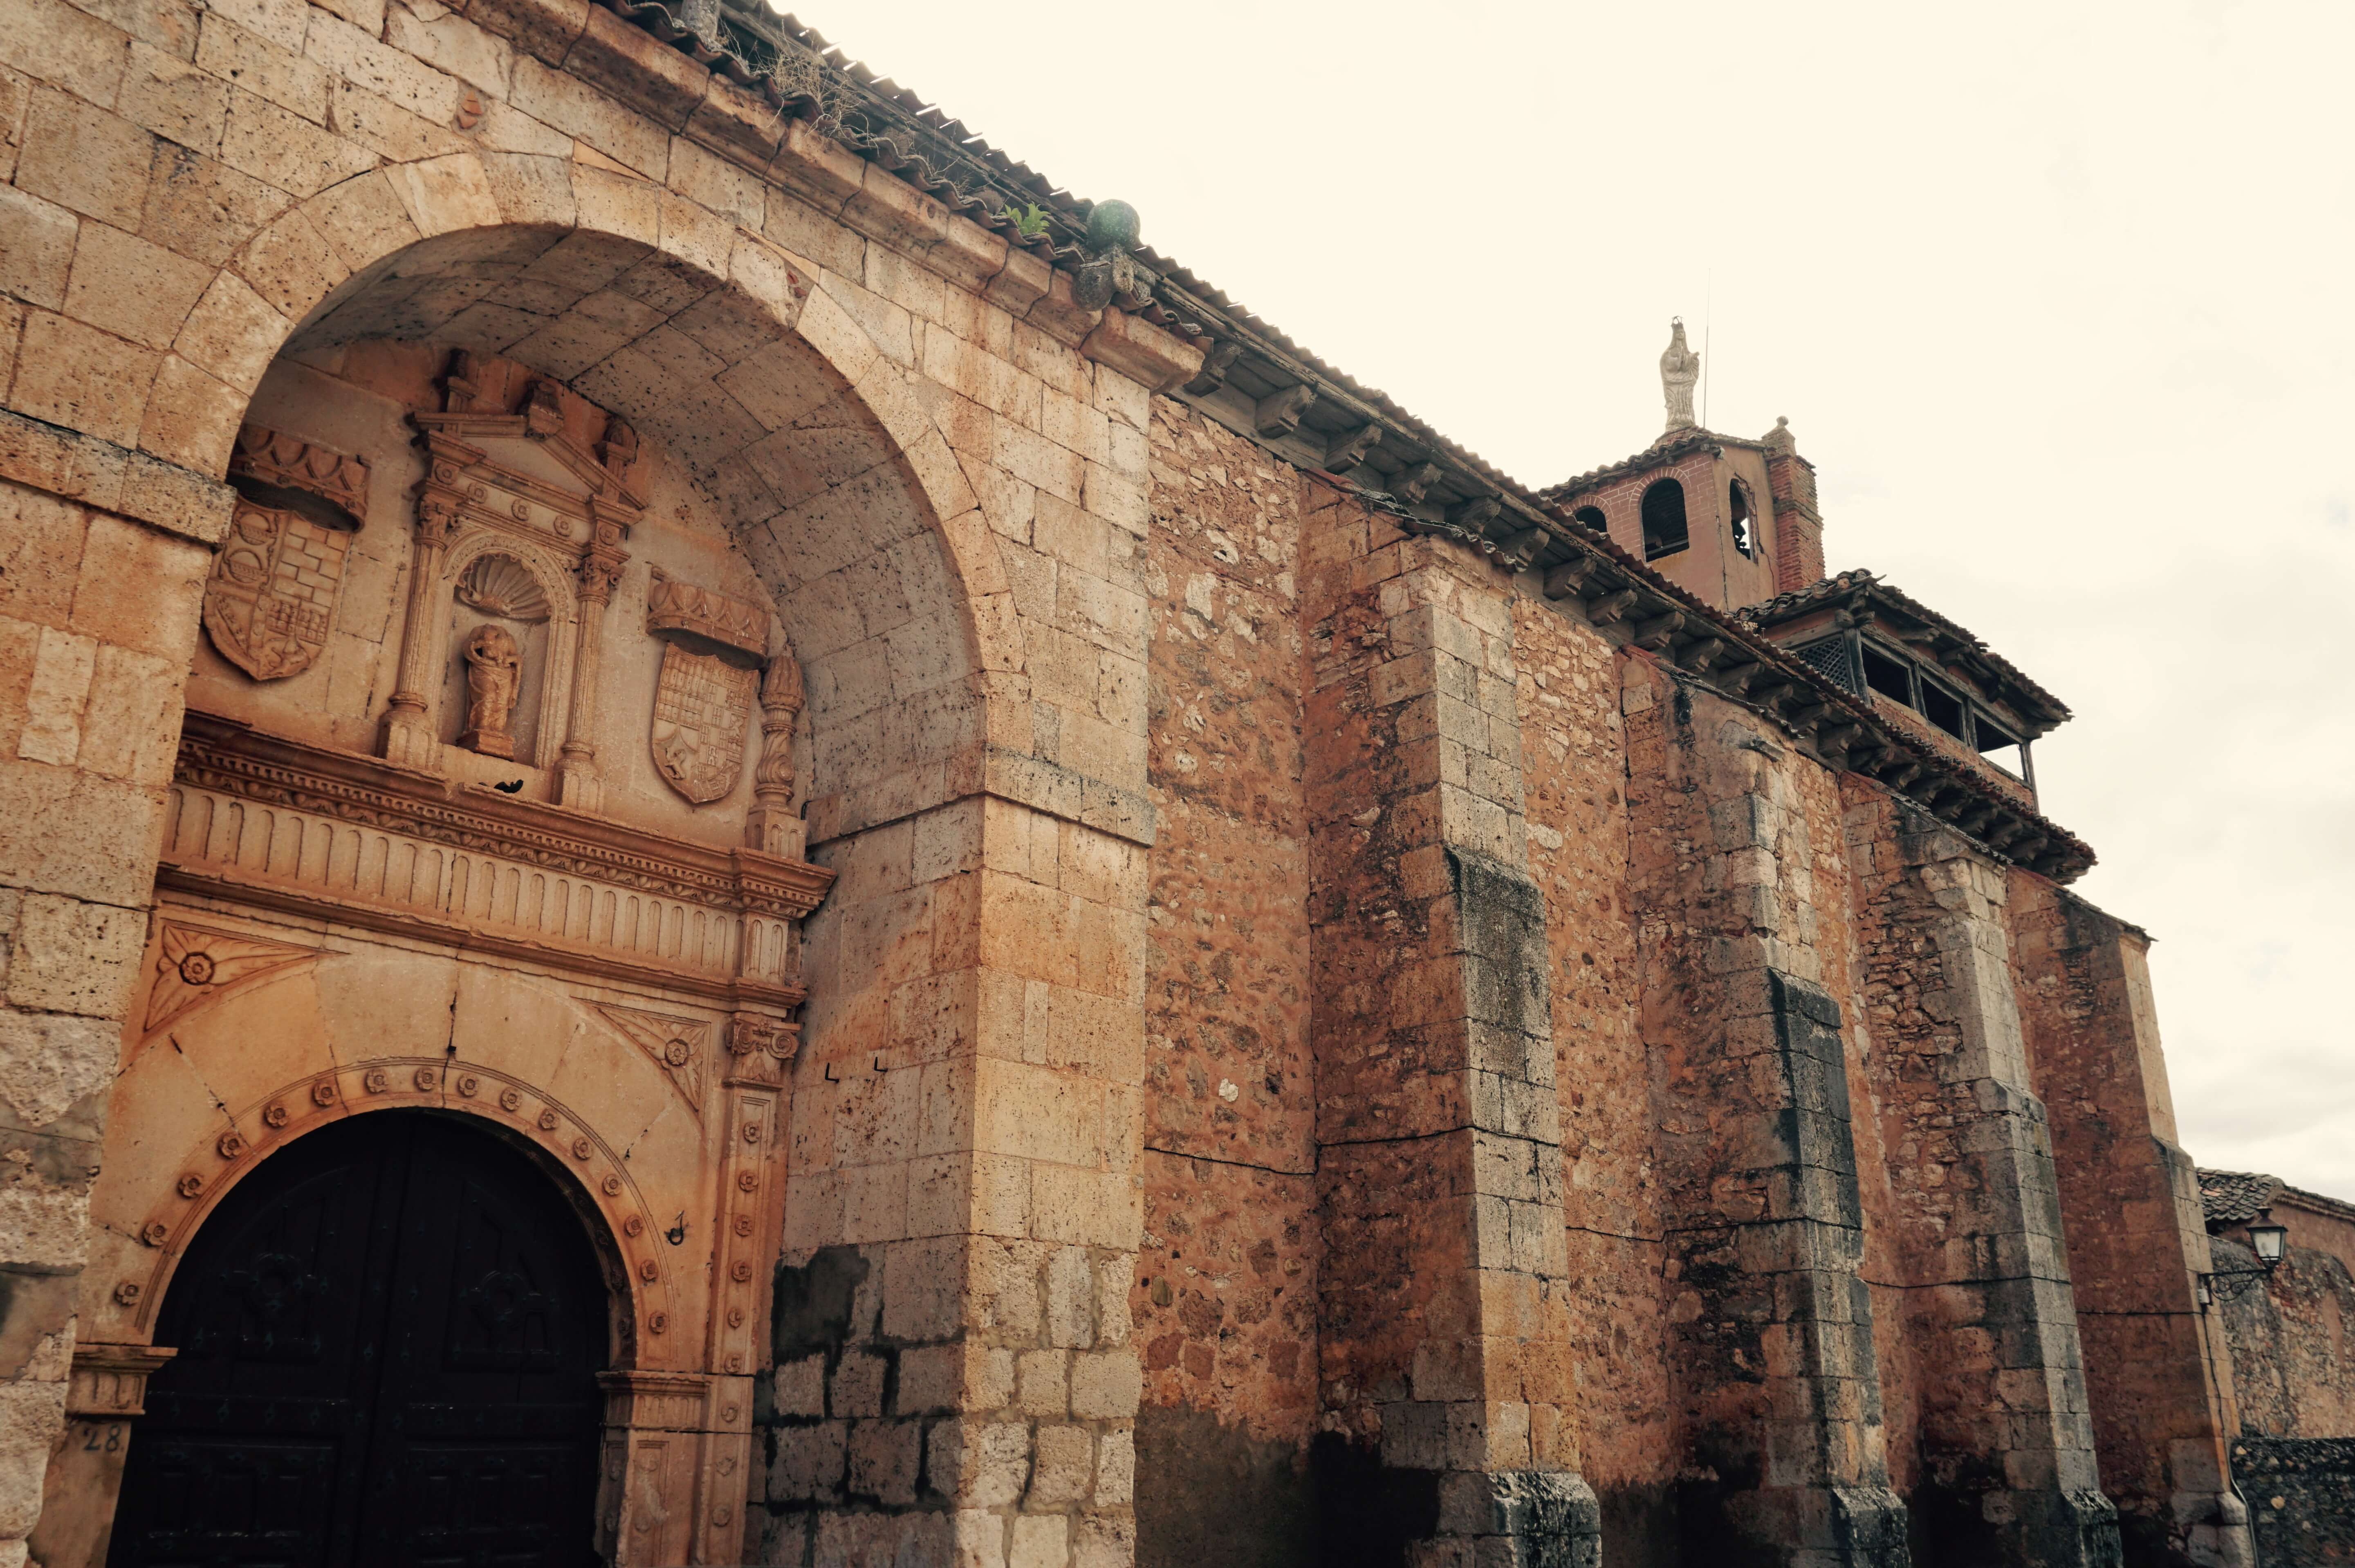  Convento de las Madres Concepcionistas en Ayllón